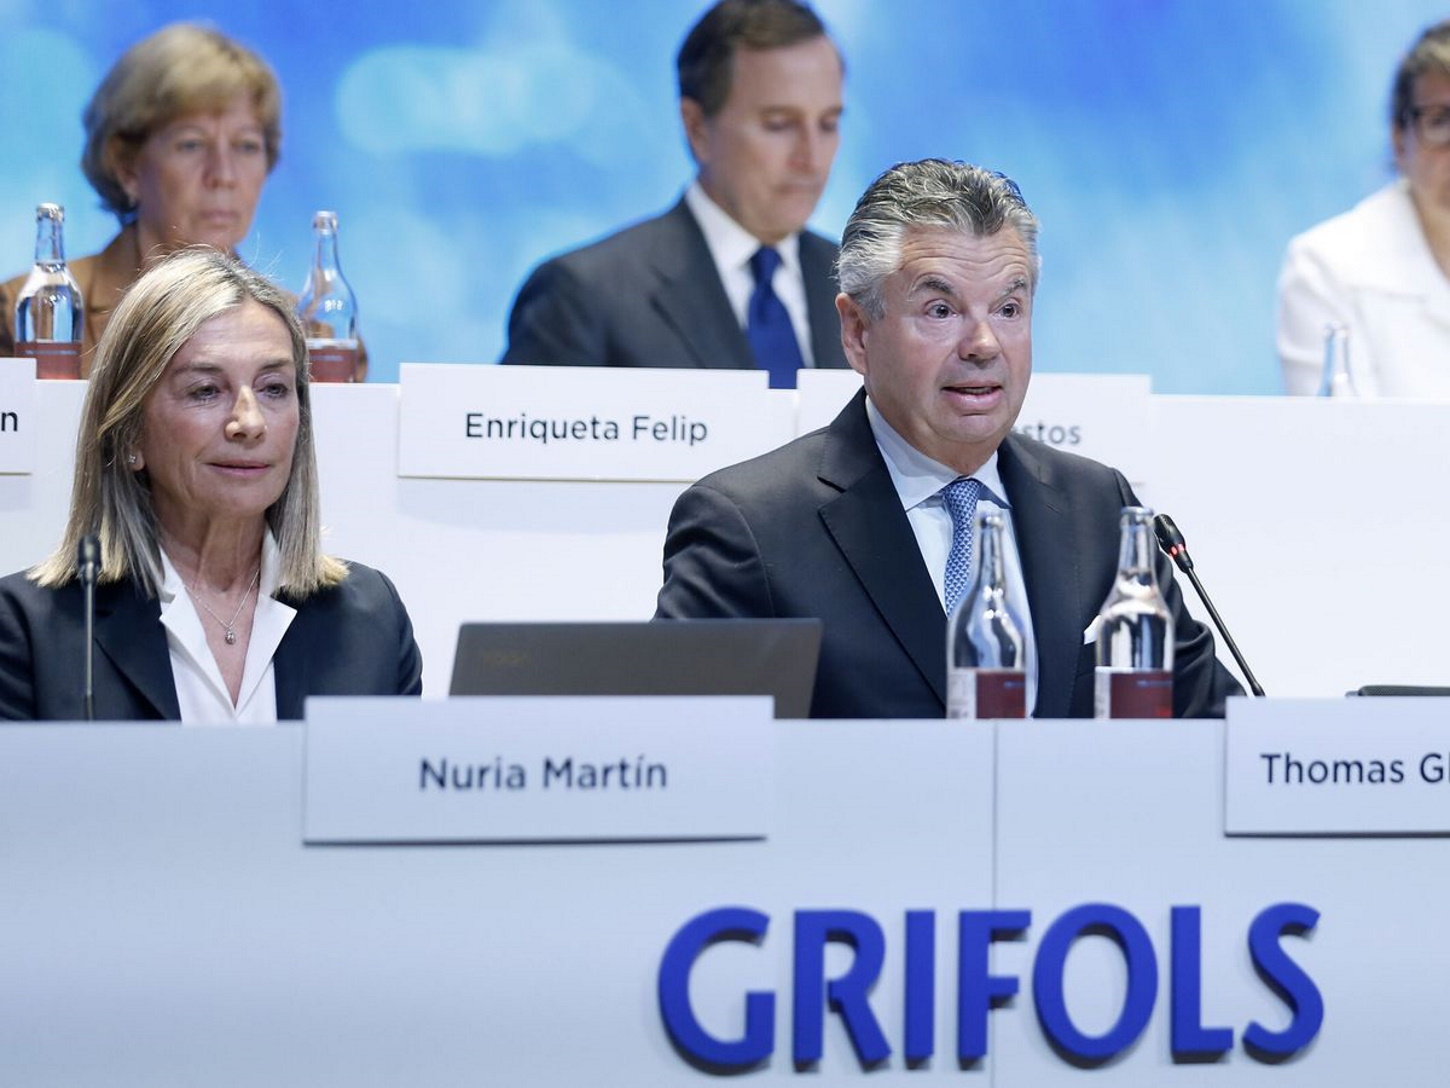 El informe señala al CEO de Grifols: “Ni es nuevo ni independiente”